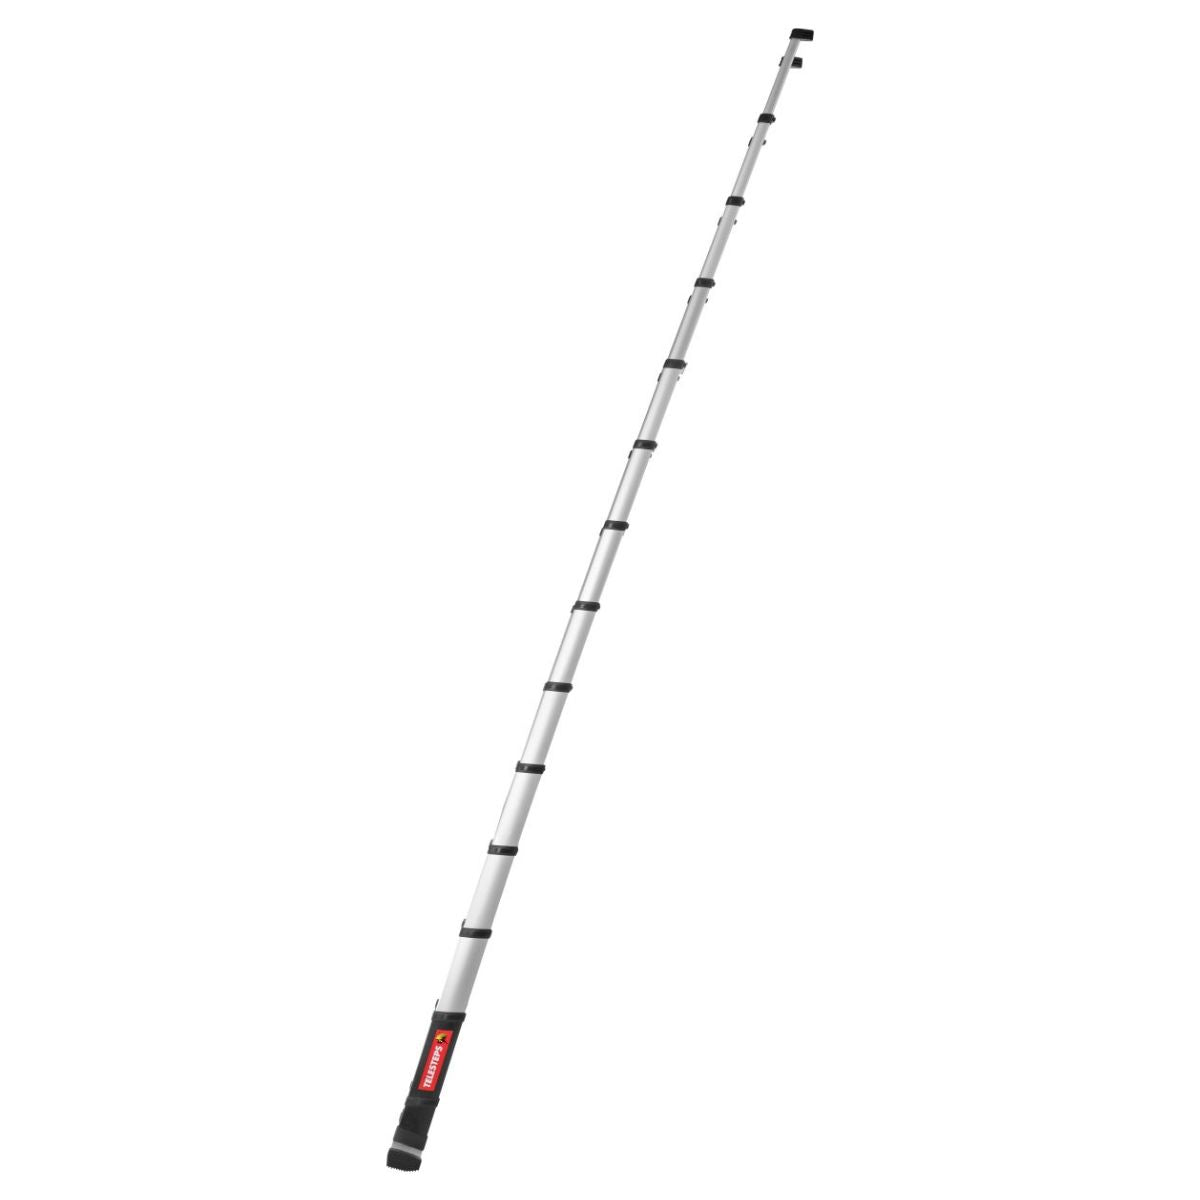 Telesteps TEL72241681 4.1m Prime Line Telescopic Ladder with Stabiliser Bar